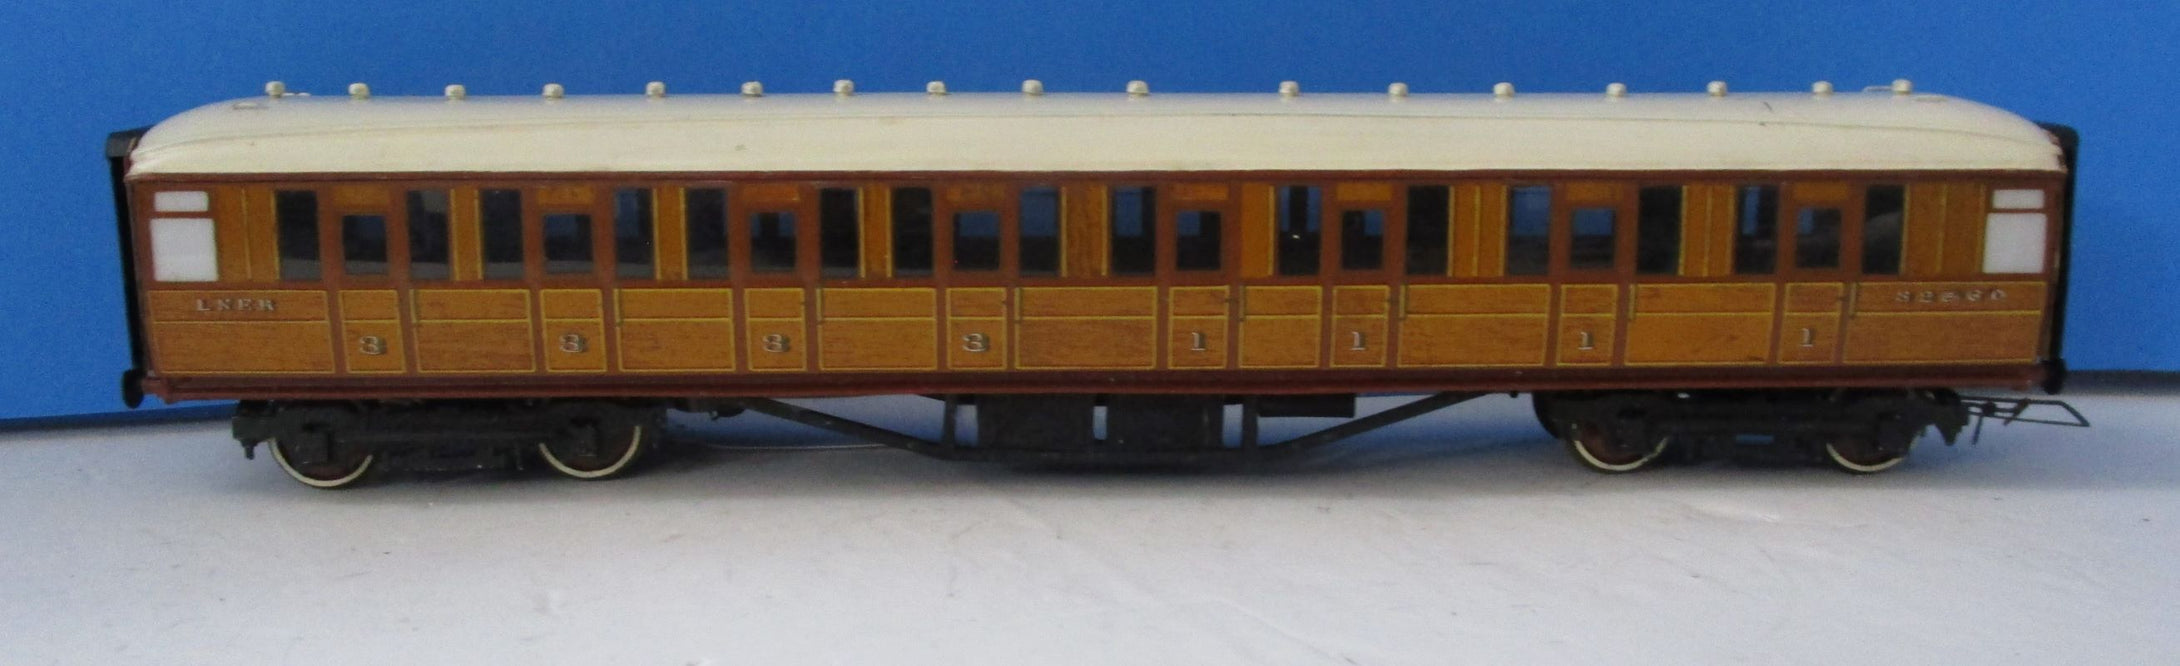 BMTC041 Kit built LNER Composite coach - Unboxed